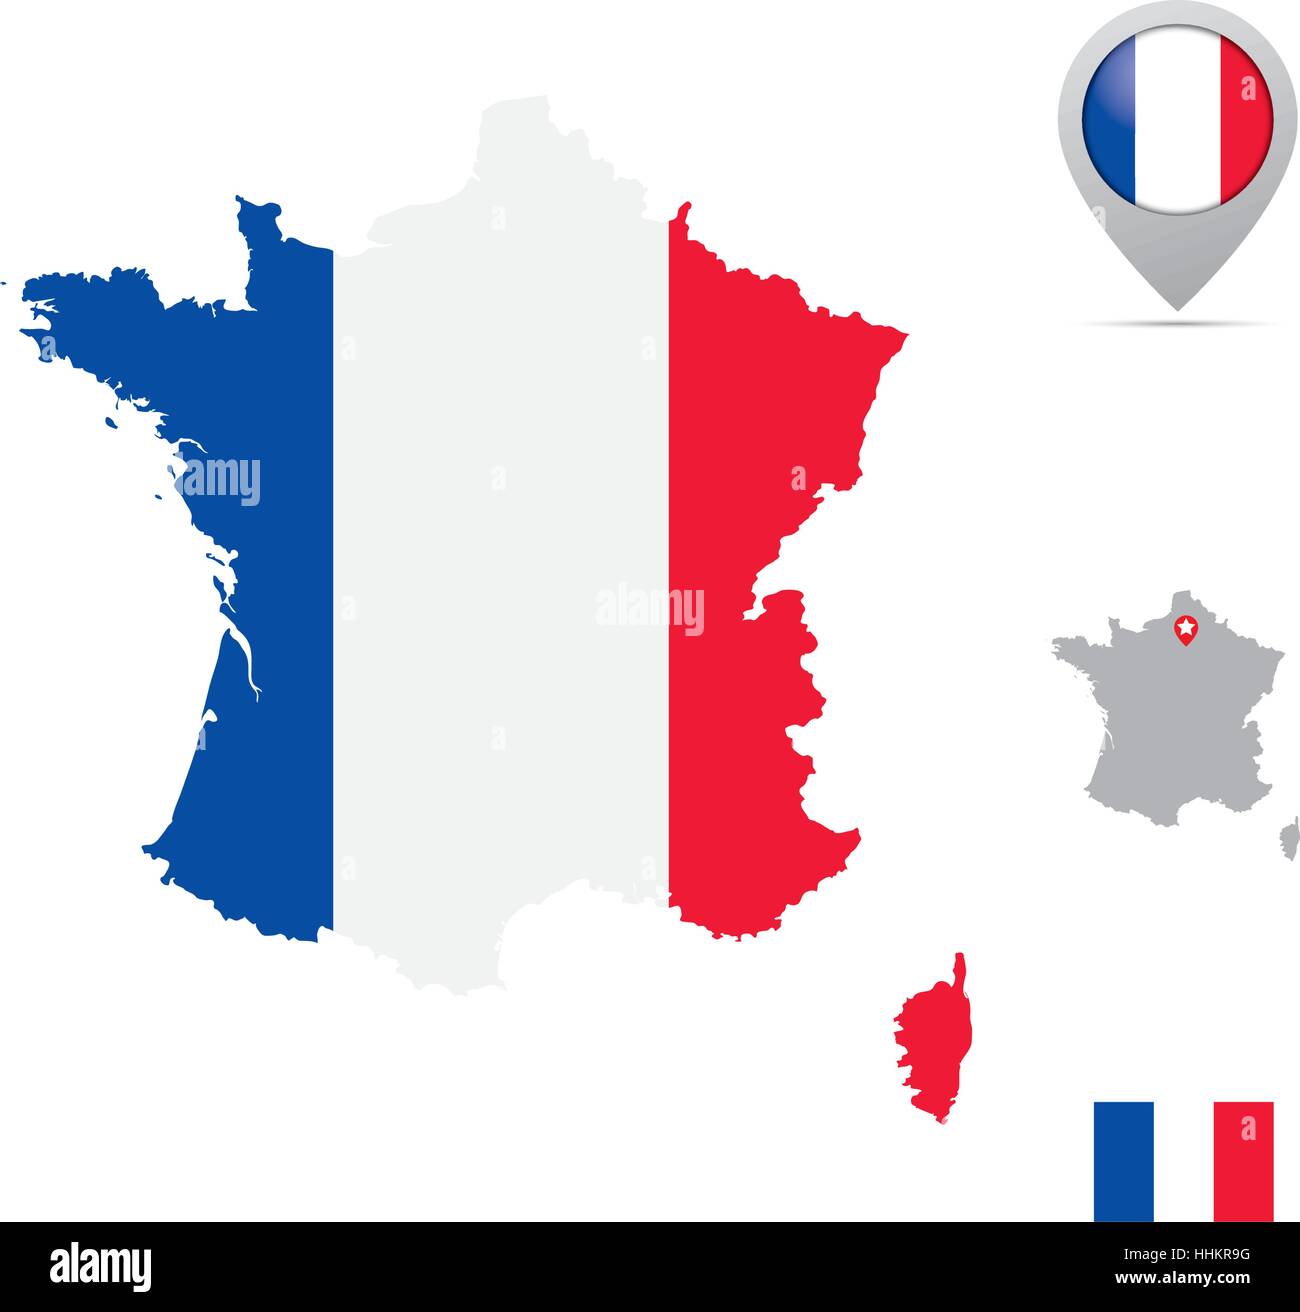 Frankreich Karte in Farben der Nationalflagge, Flagge, Marker und Lage der  Hauptstadt Paris Stock-Vektorgrafik - Alamy